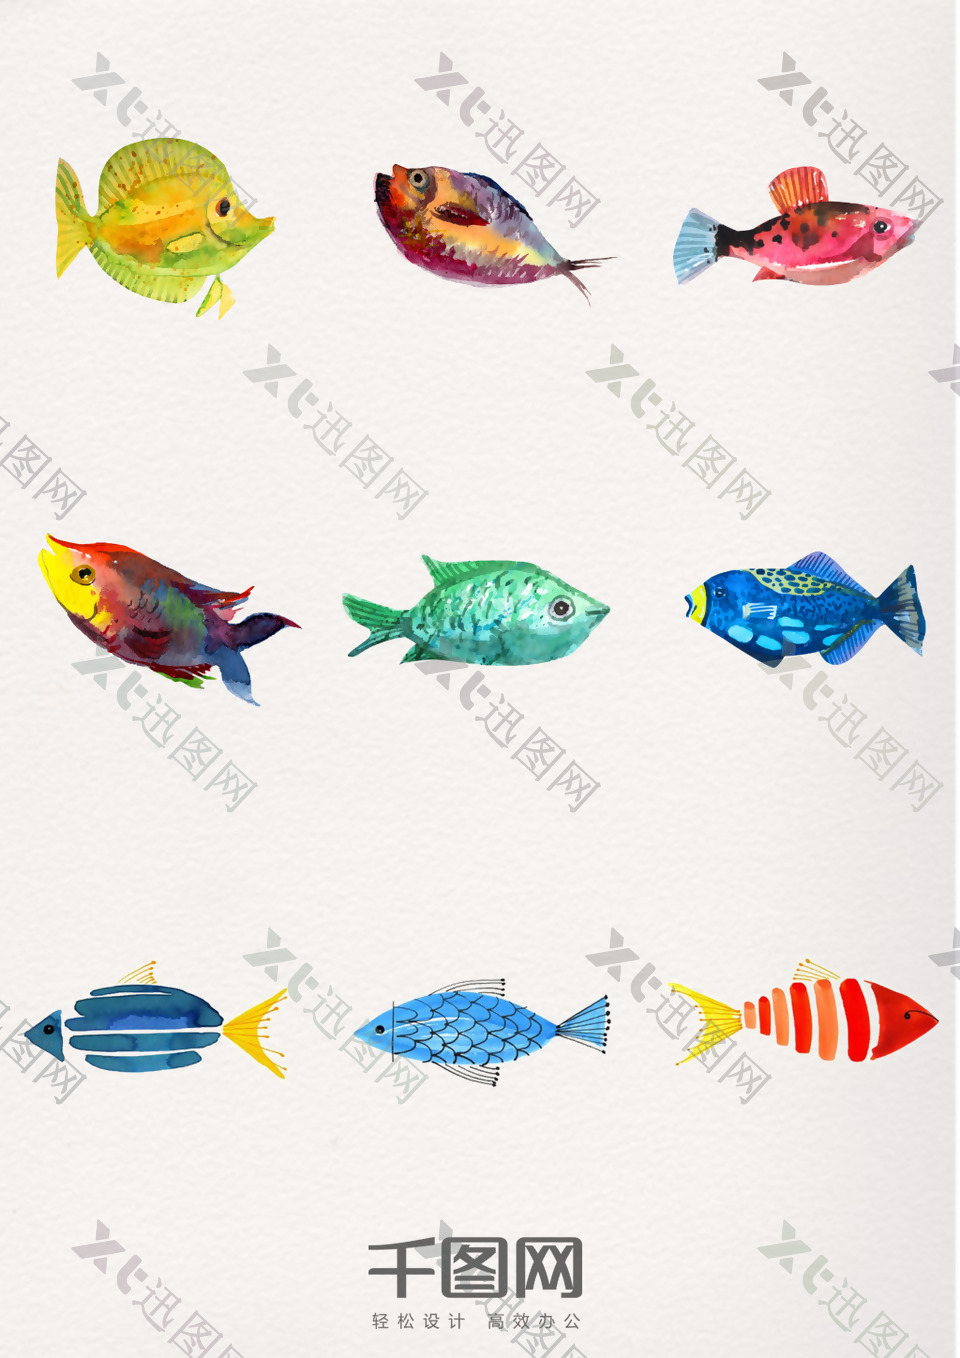 一组水彩动物鱼设计素材